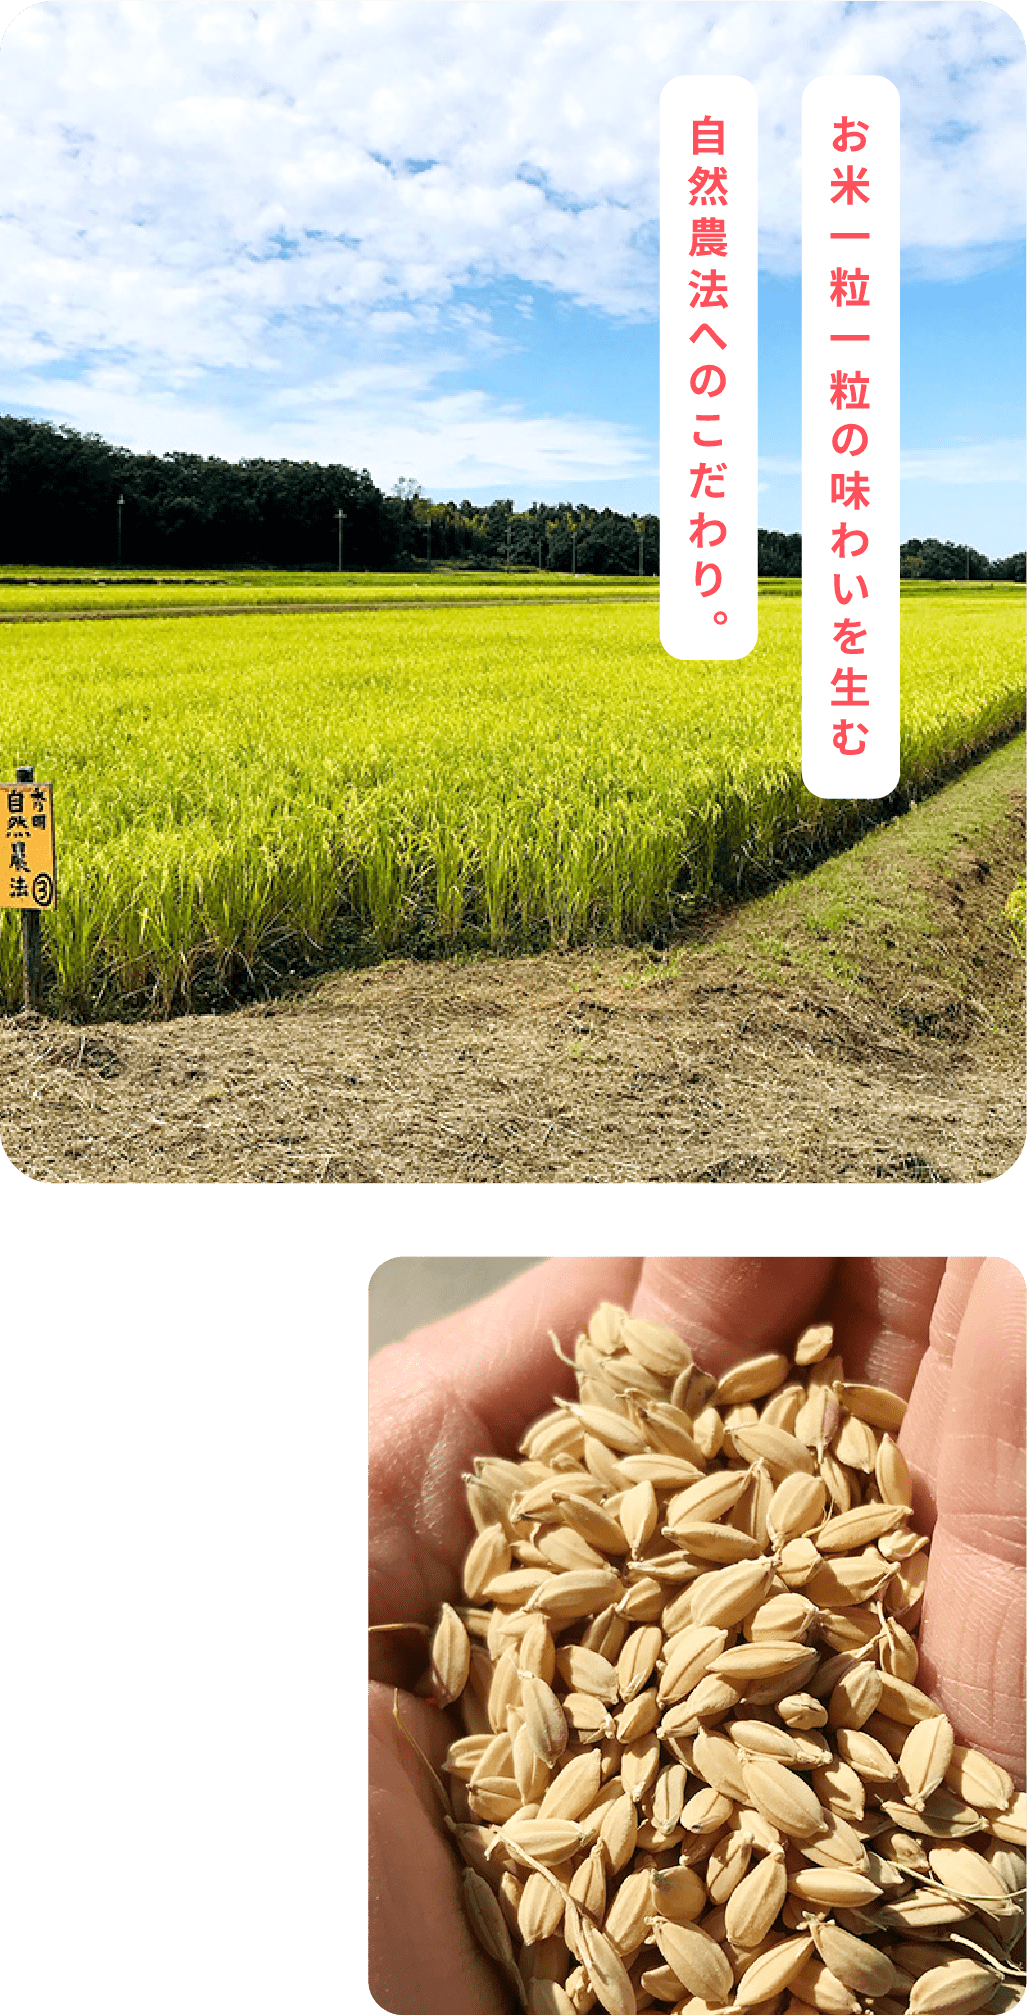 お米一粒一粒の味わいを生む自然農法へのこだわり。